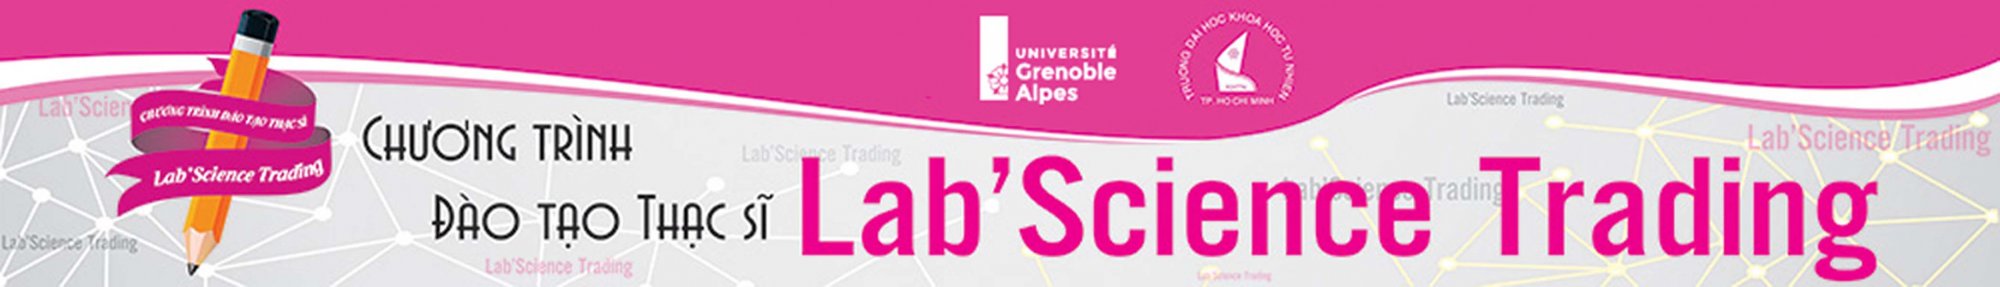  GIỚI THIỆU CHƯƠNG TRÌNH ĐÀO TẠO THẠC SĨ  Chương trình liên kết đào tạo giữa Trường Đại học Khoa học Tự nhiên với Đại học Grenoble Aples (Cộng Hòa Pháp)